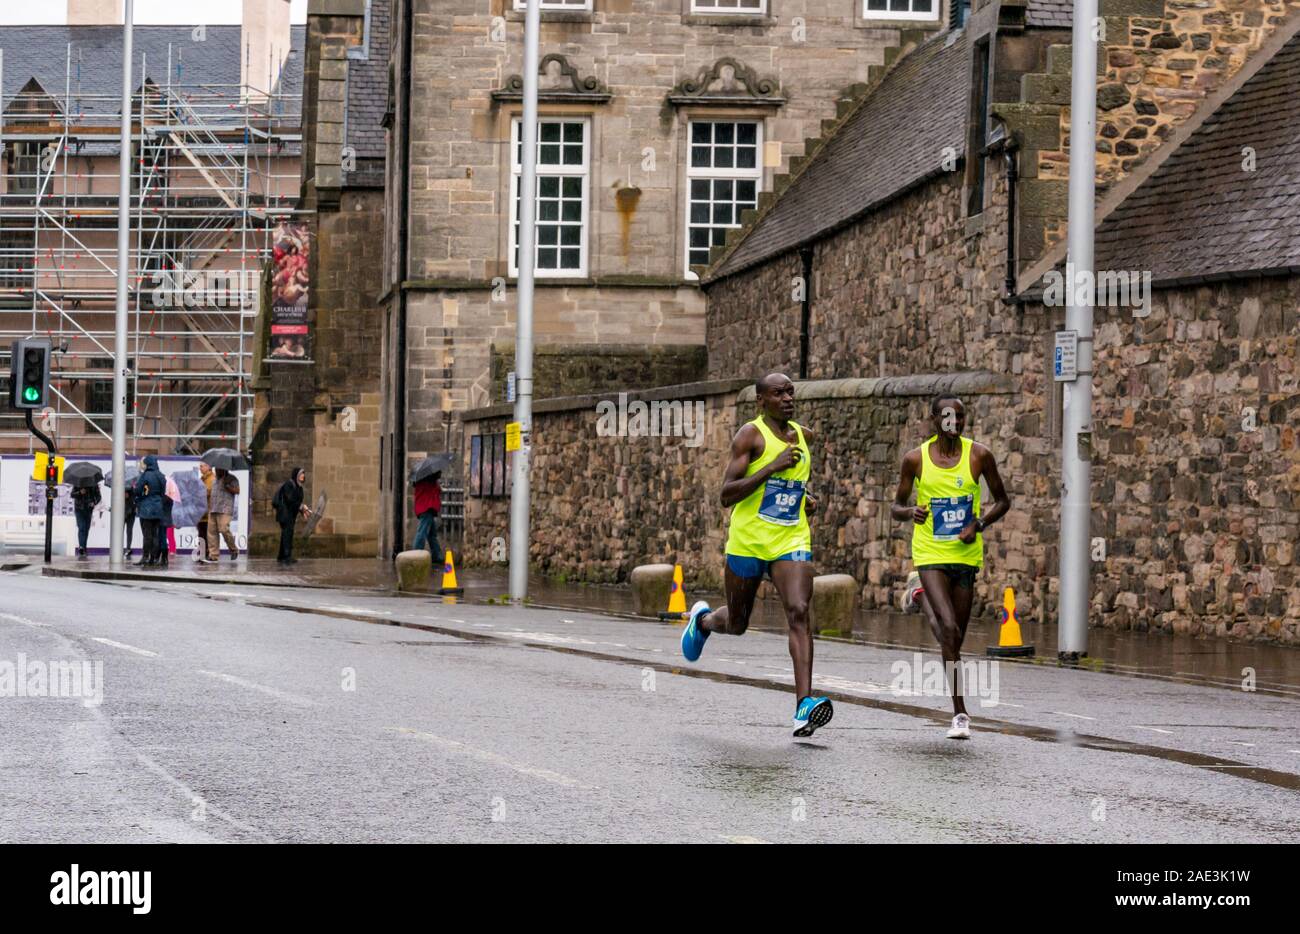 Festival Edinburgh Marathon 2019 à Holyrood Palace par temps humide avec des coureurs kenyans Tanui, Dan & Gedion Cheruiyot Kurgat, Édimbourg, Écosse Banque D'Images